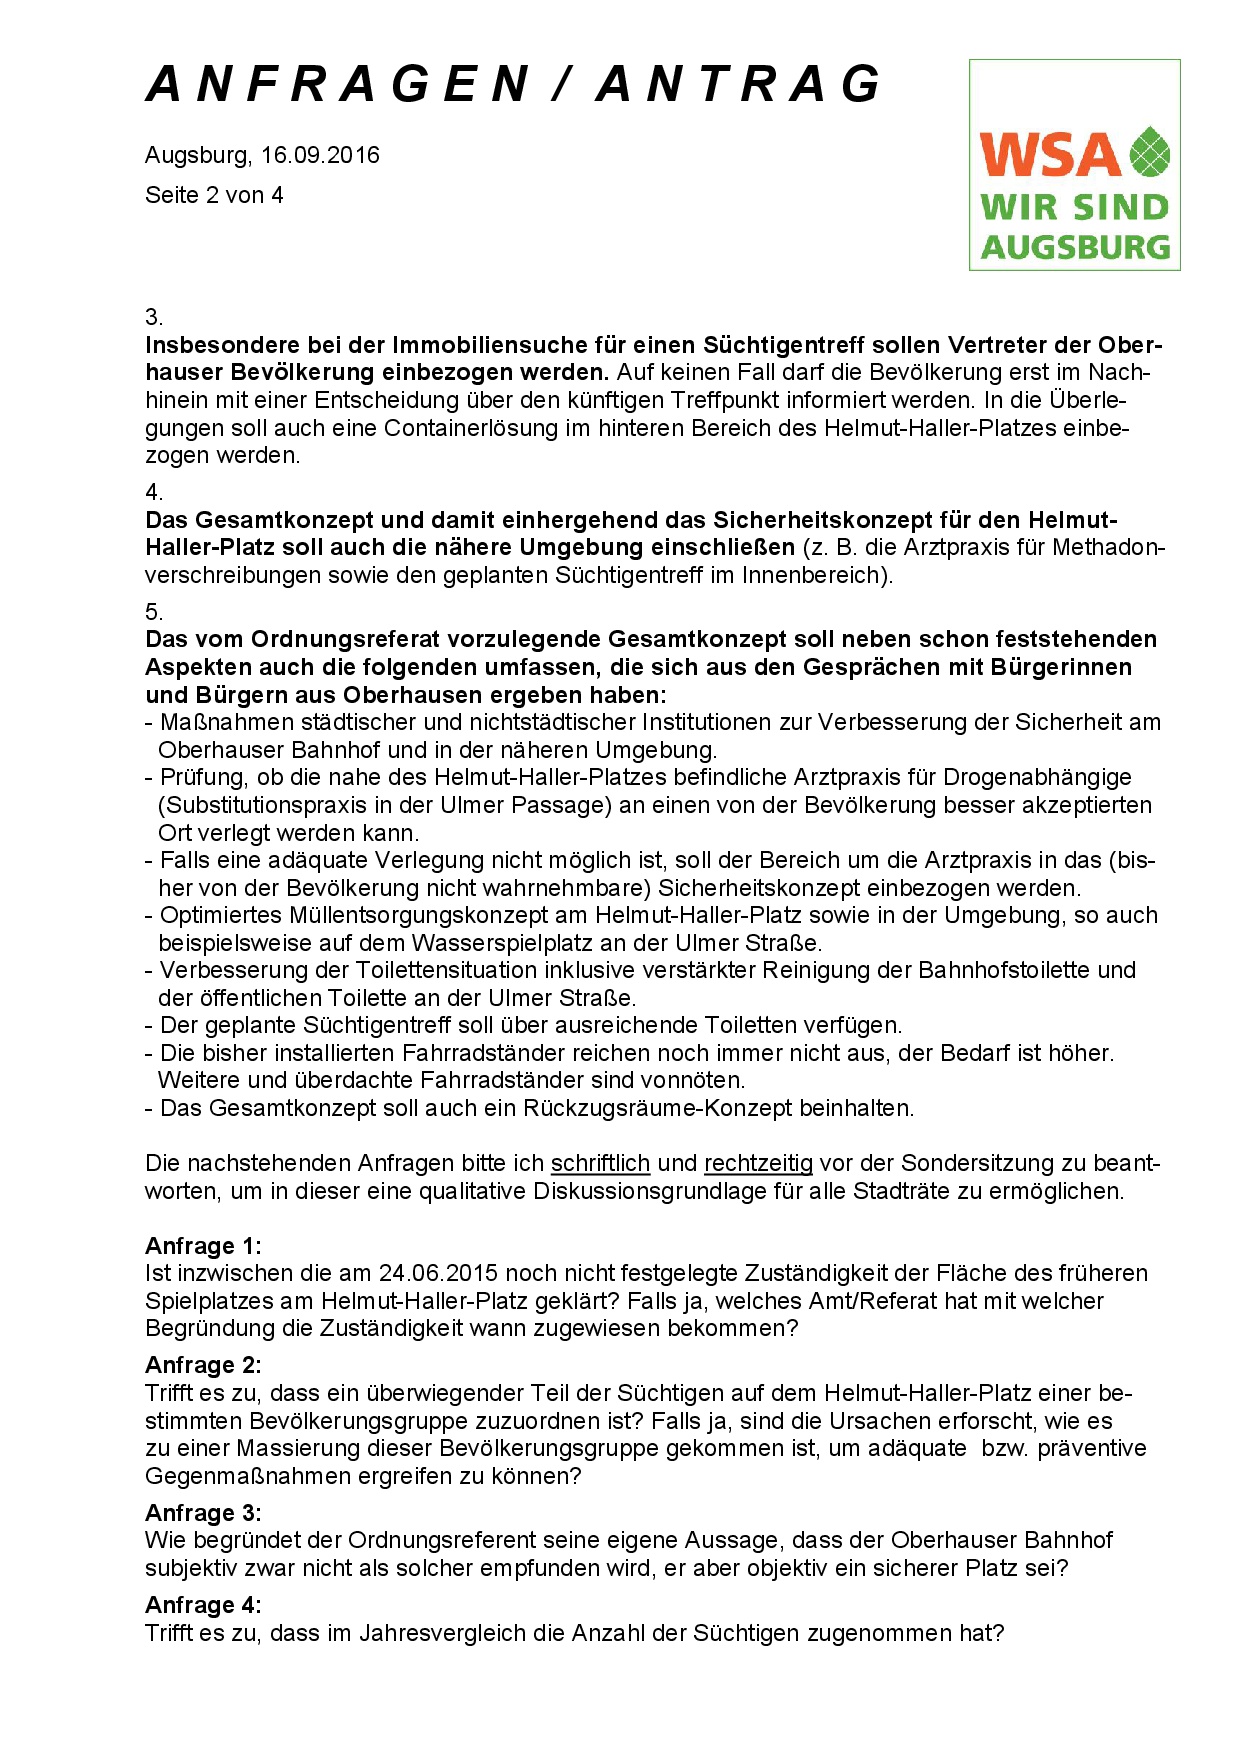 WSA-Antrag und -Anfragen vom 16.09.2016 zum Helmut-Haller-Platz, Seite 2